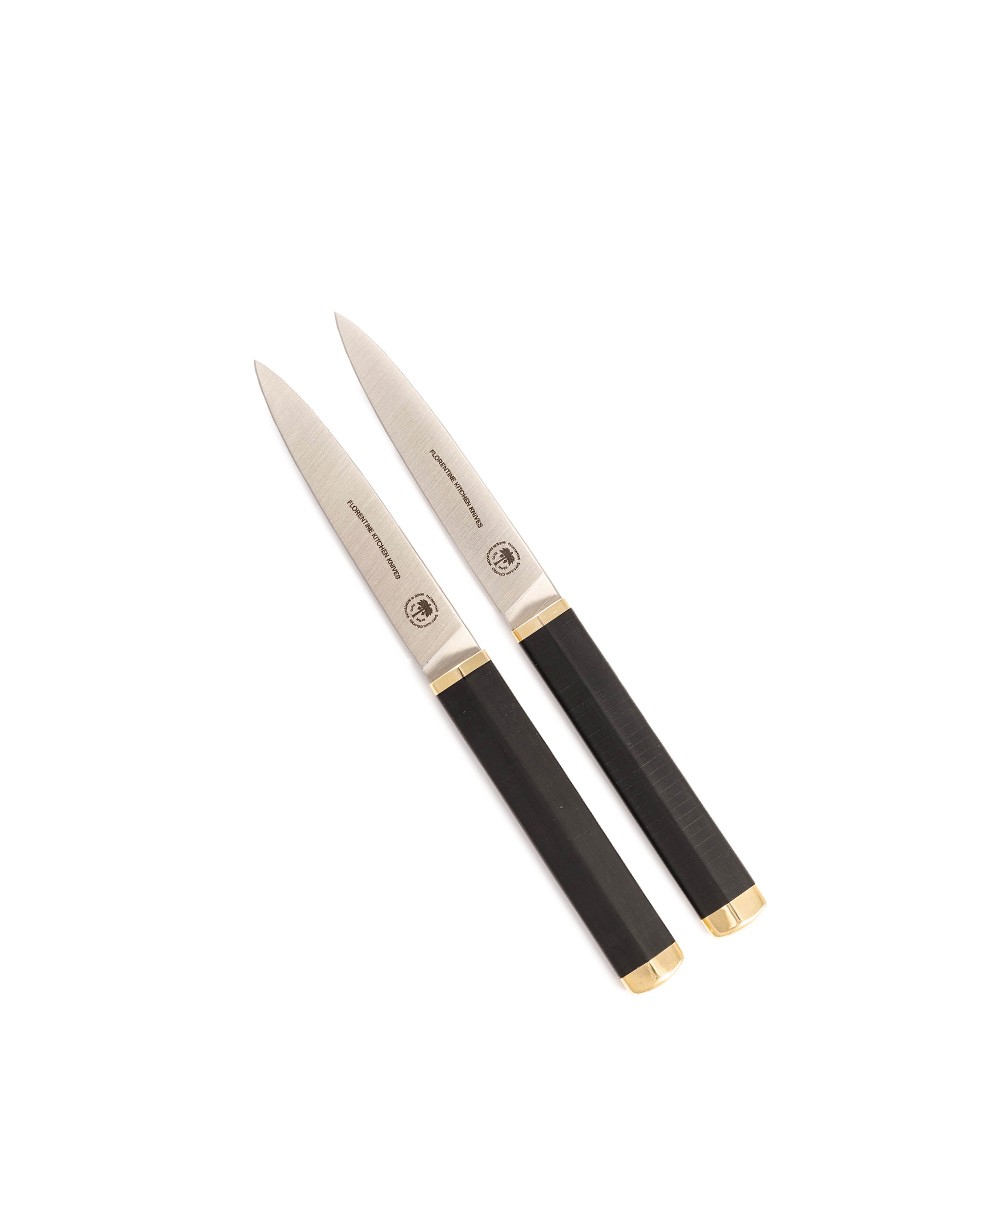 Produktbild des Florentine Table Knife in black von Florentine Kitchen Knives im RAUM concept store 